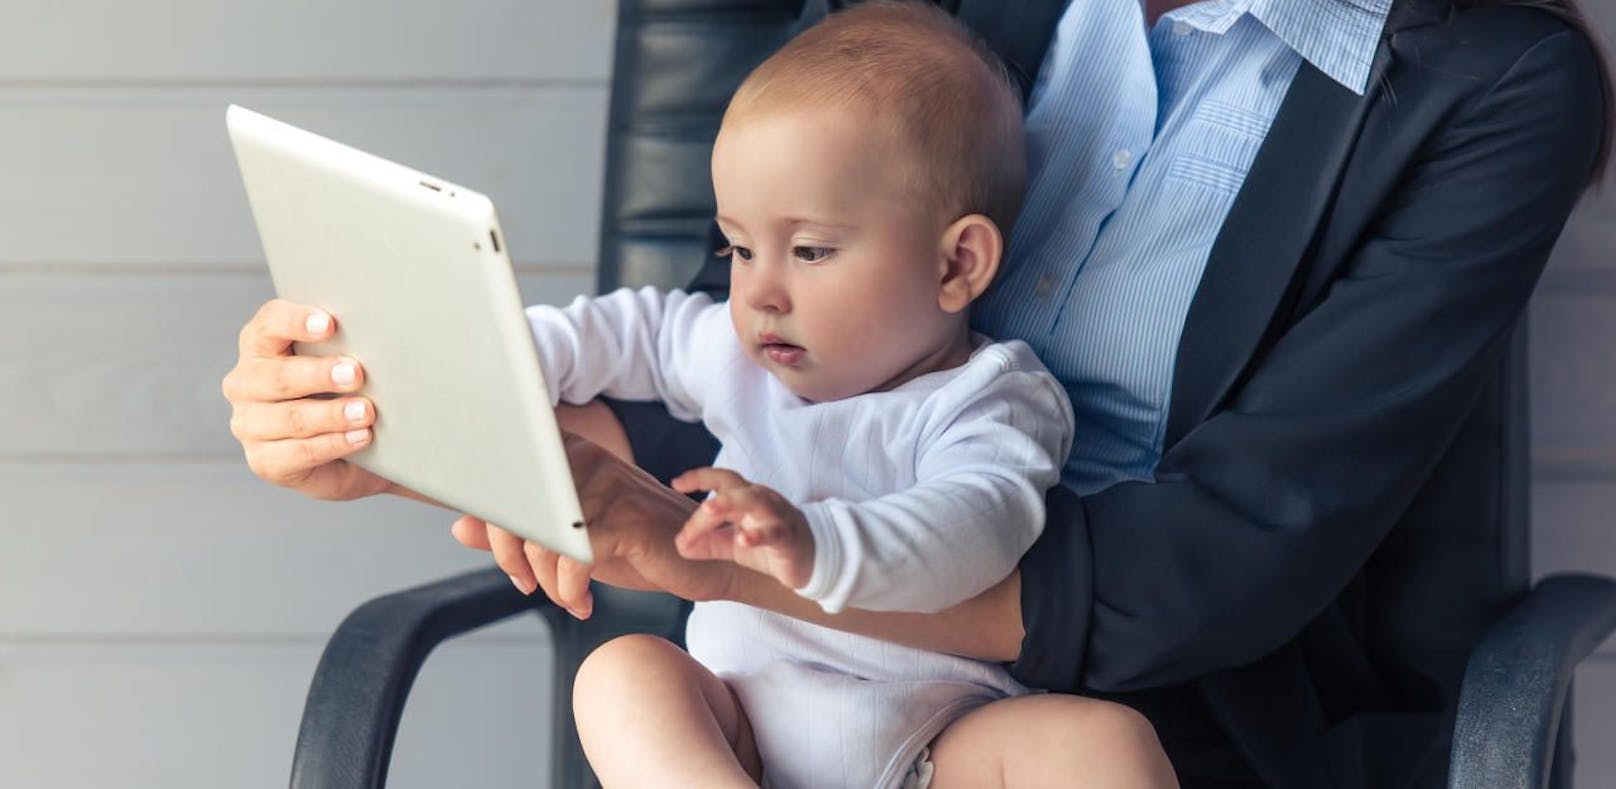 Babys, die viel Zeit vor Bildschirmen verbringen, lernen offenbar später sprechen.